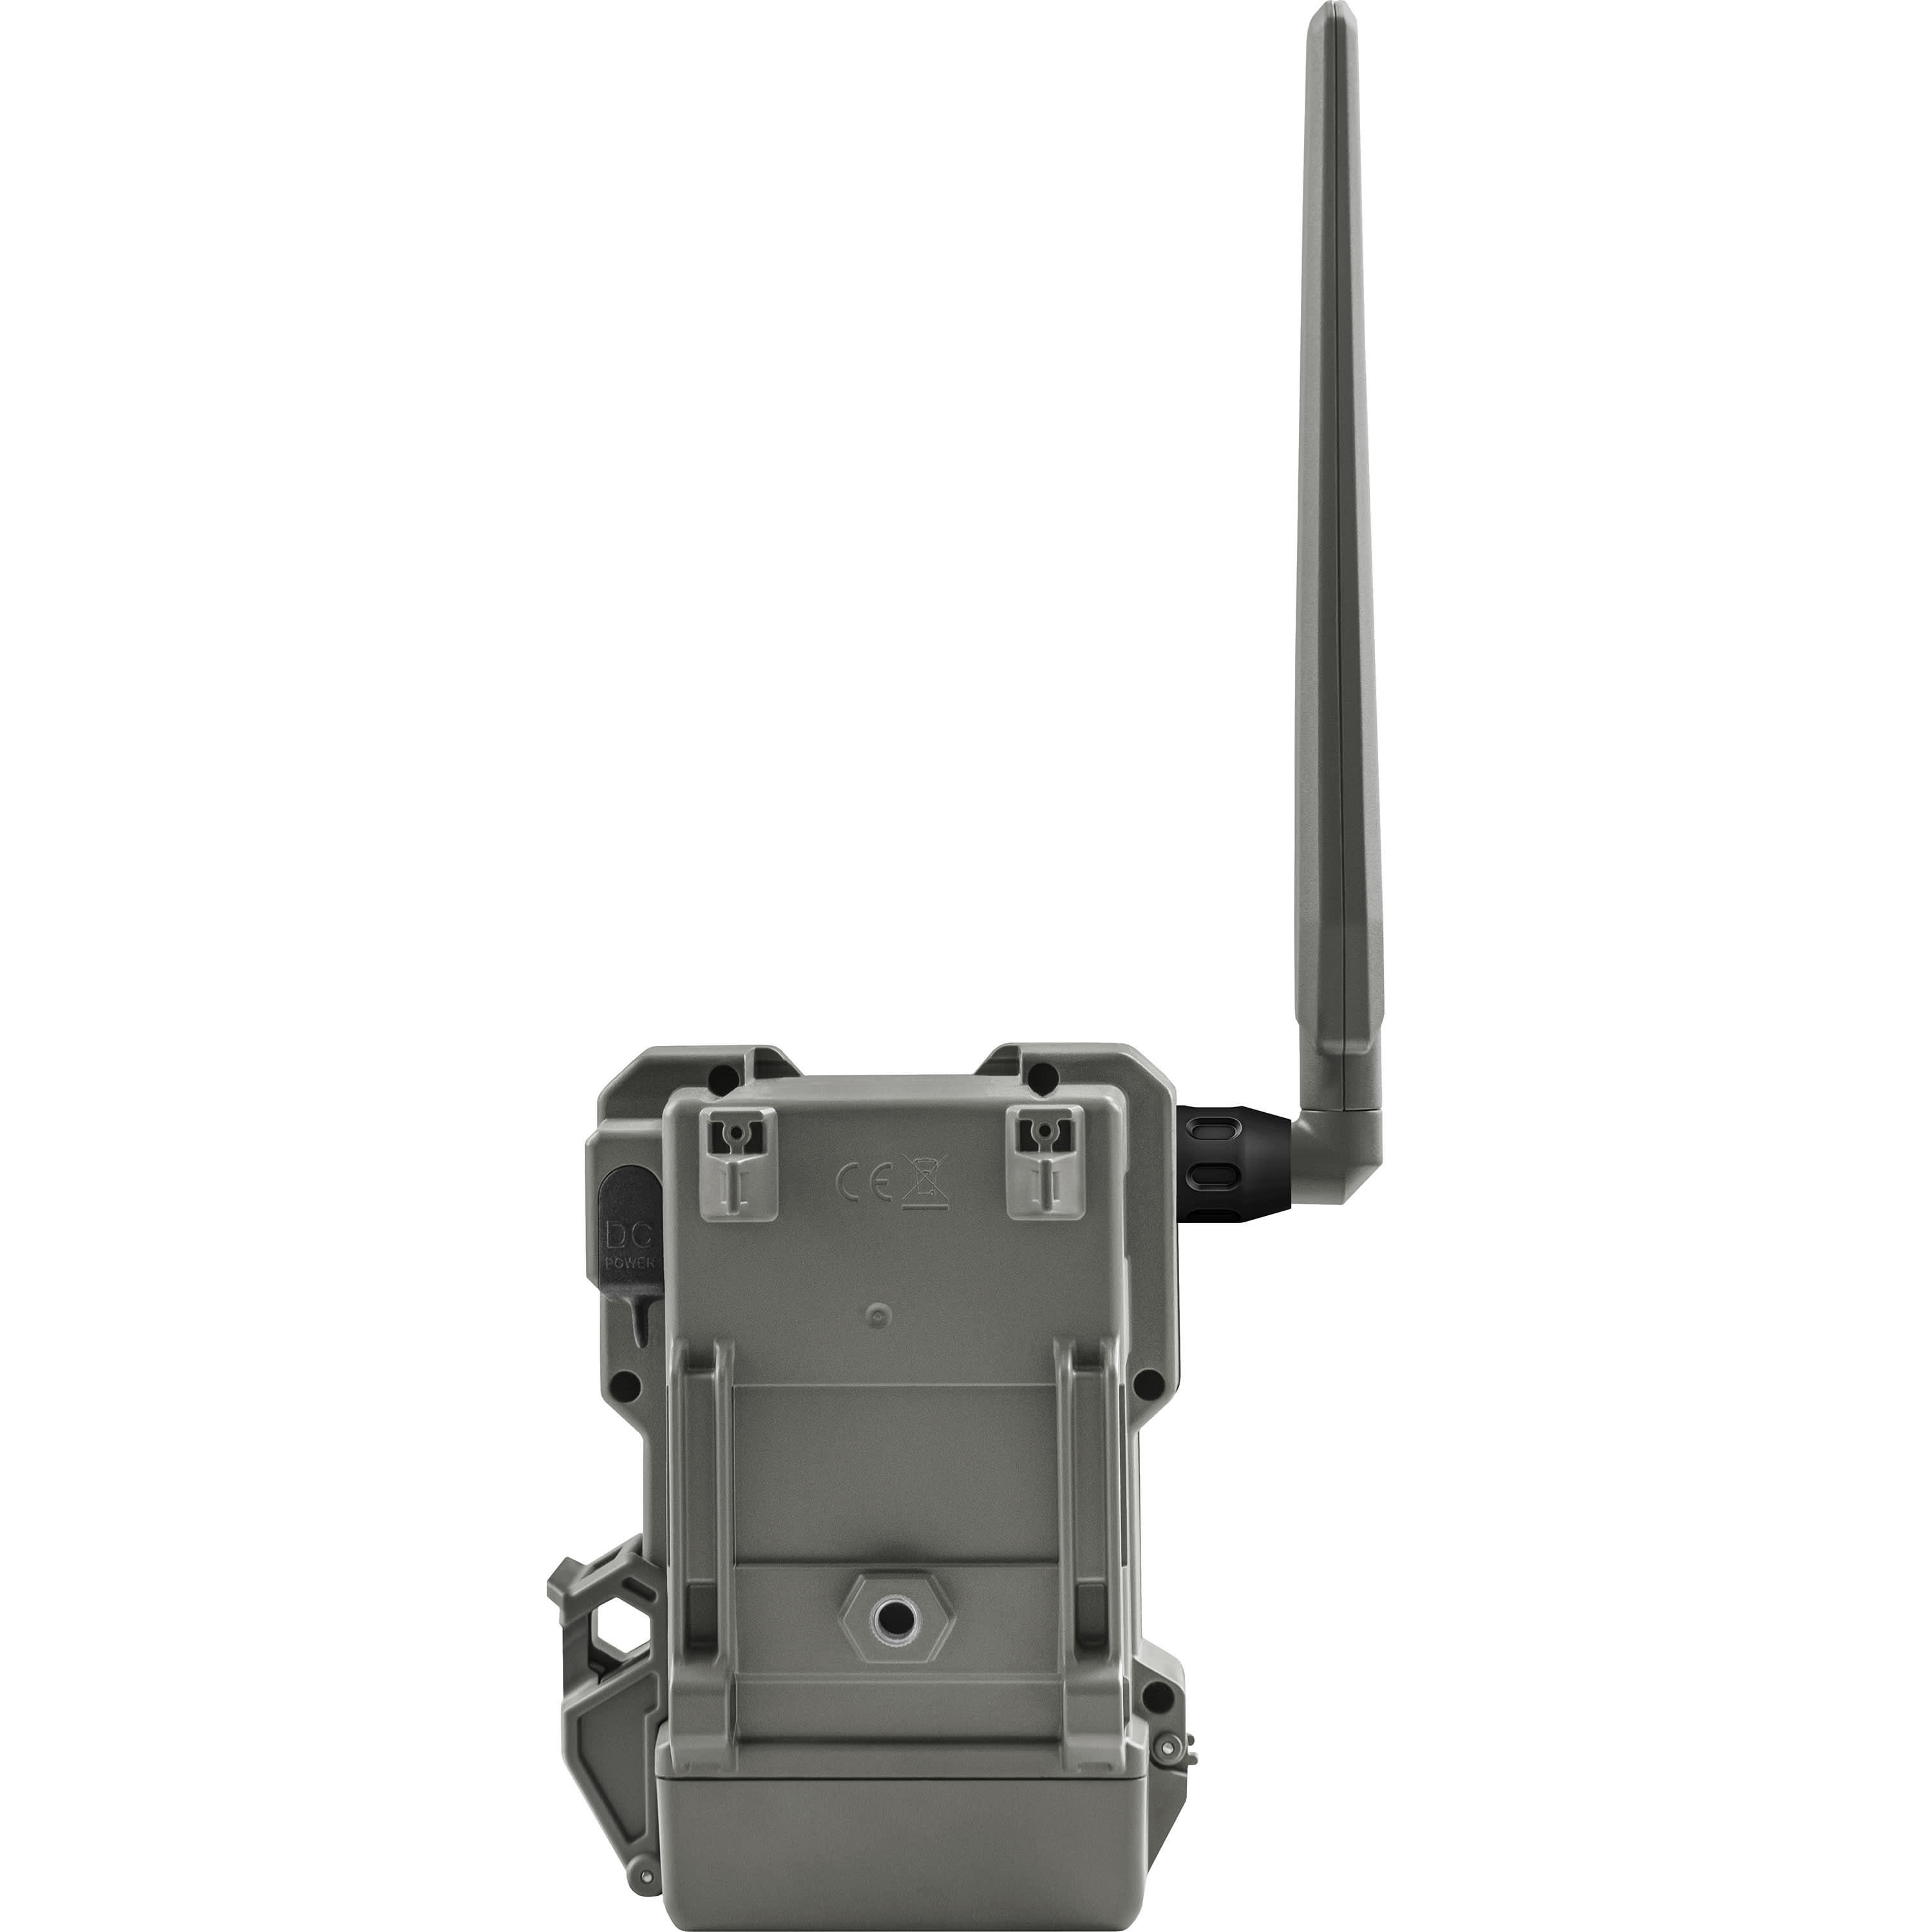 SPYPOINT® FLEX G-36 Cellular Trail Camera